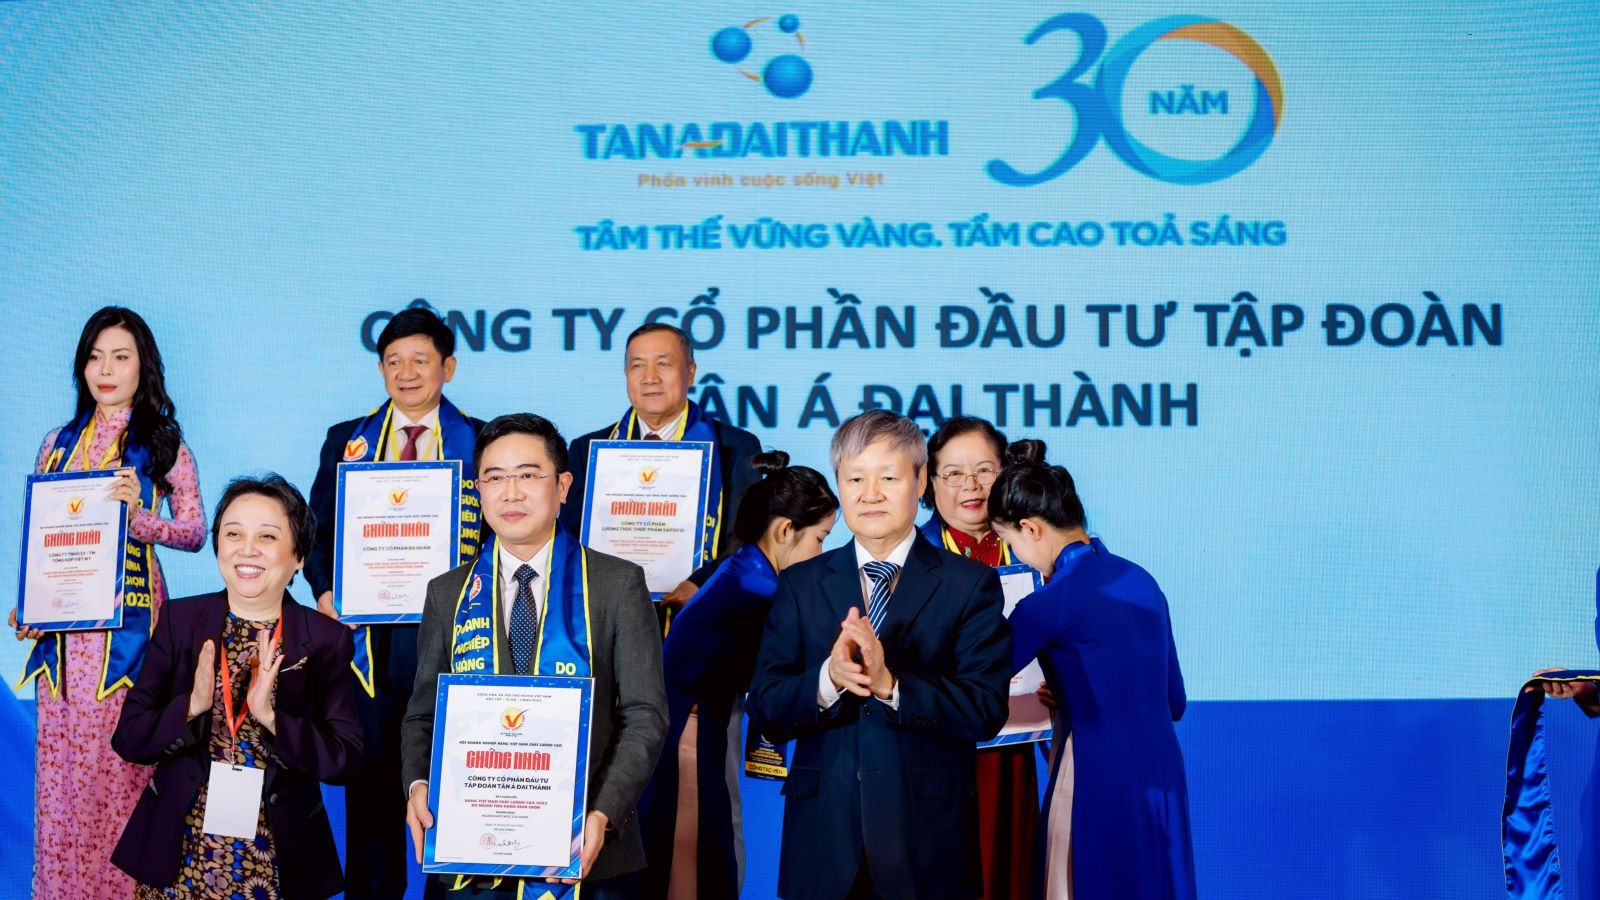 Tân Á Đại Thành: Gần 20 năm liên tiếp được tôn vinh “Hàng Việt Nam ...